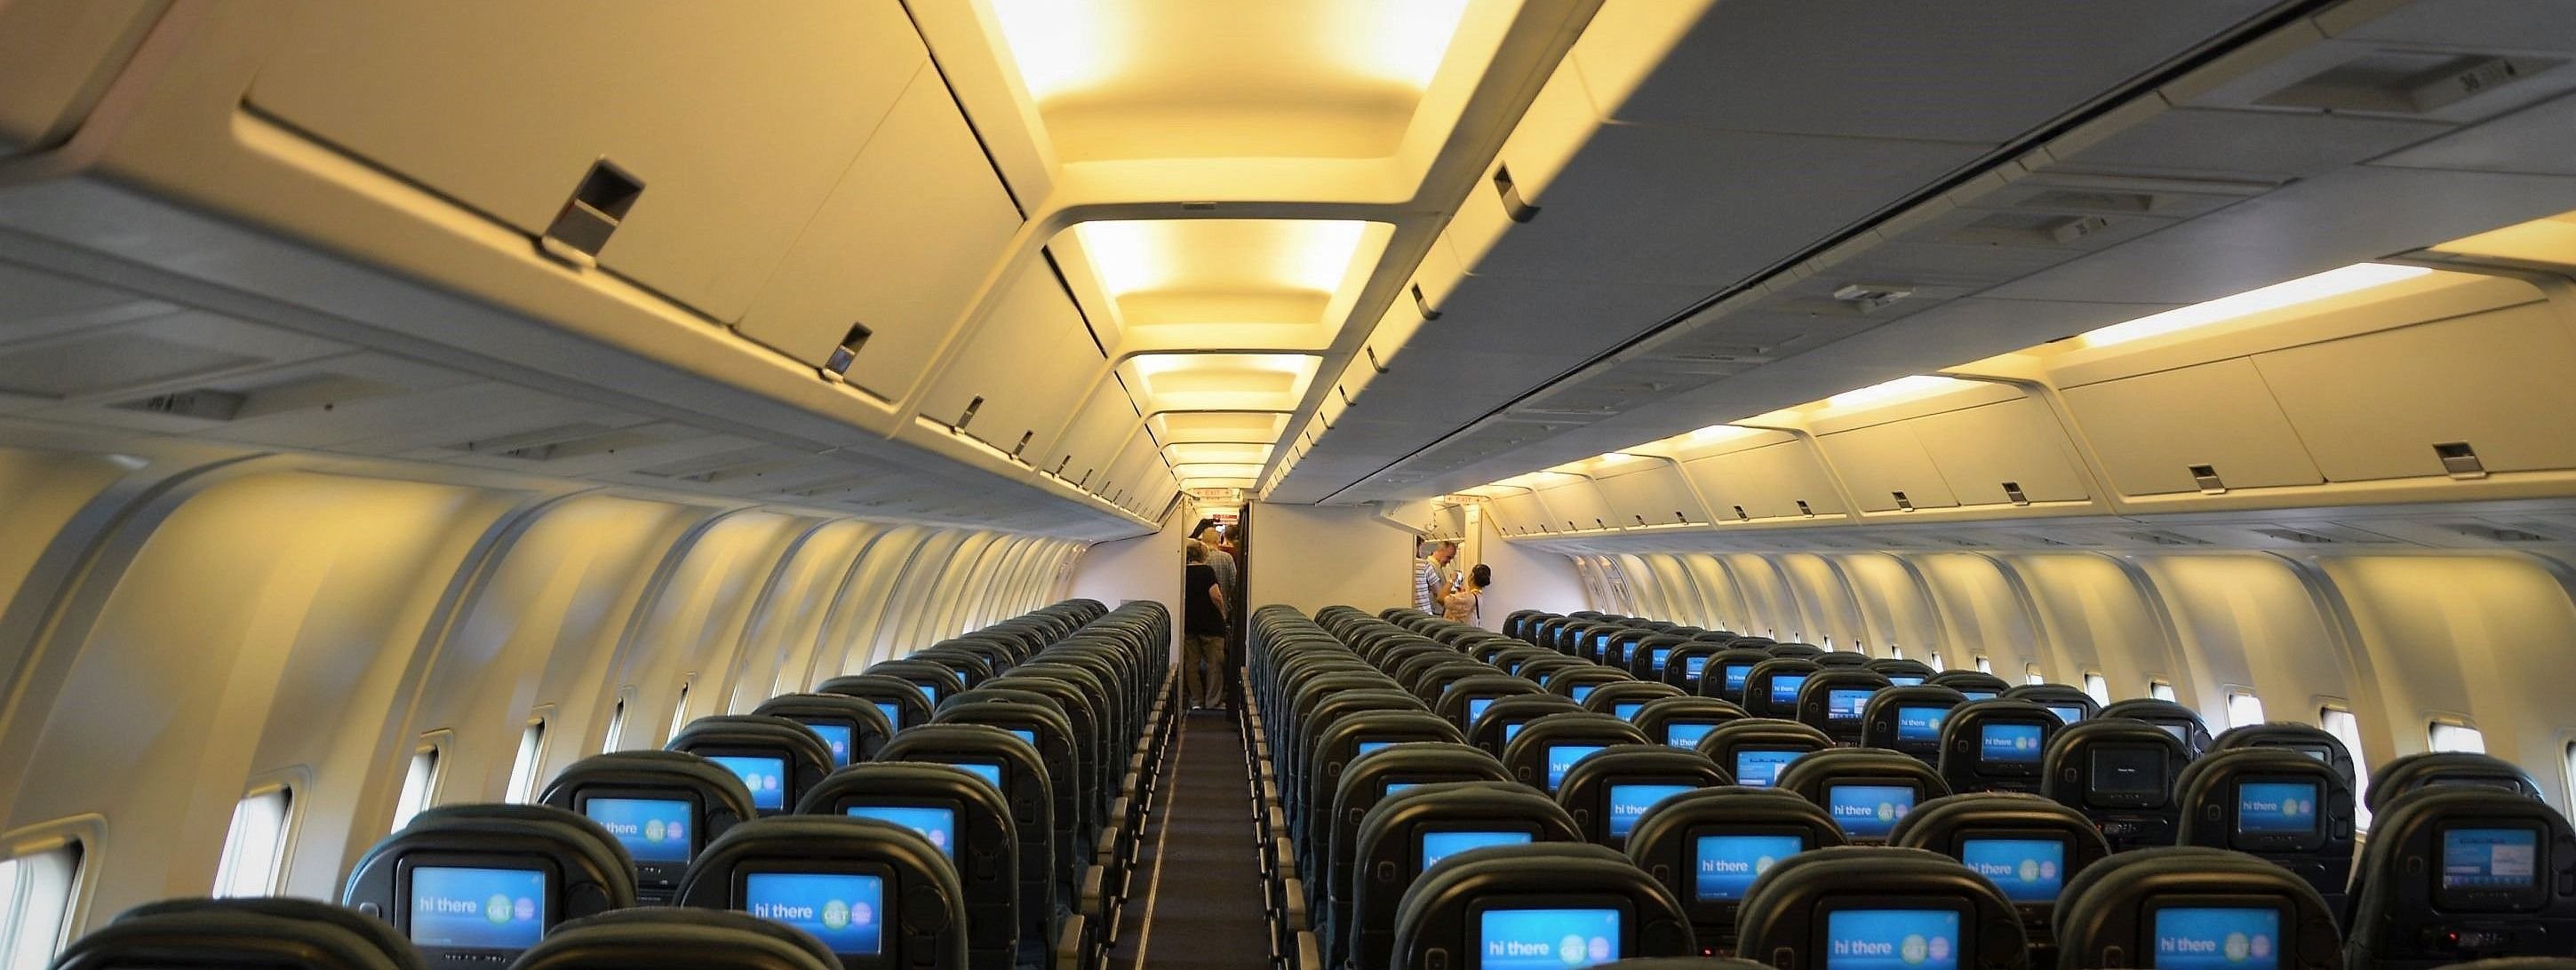 Boeing 767 салон